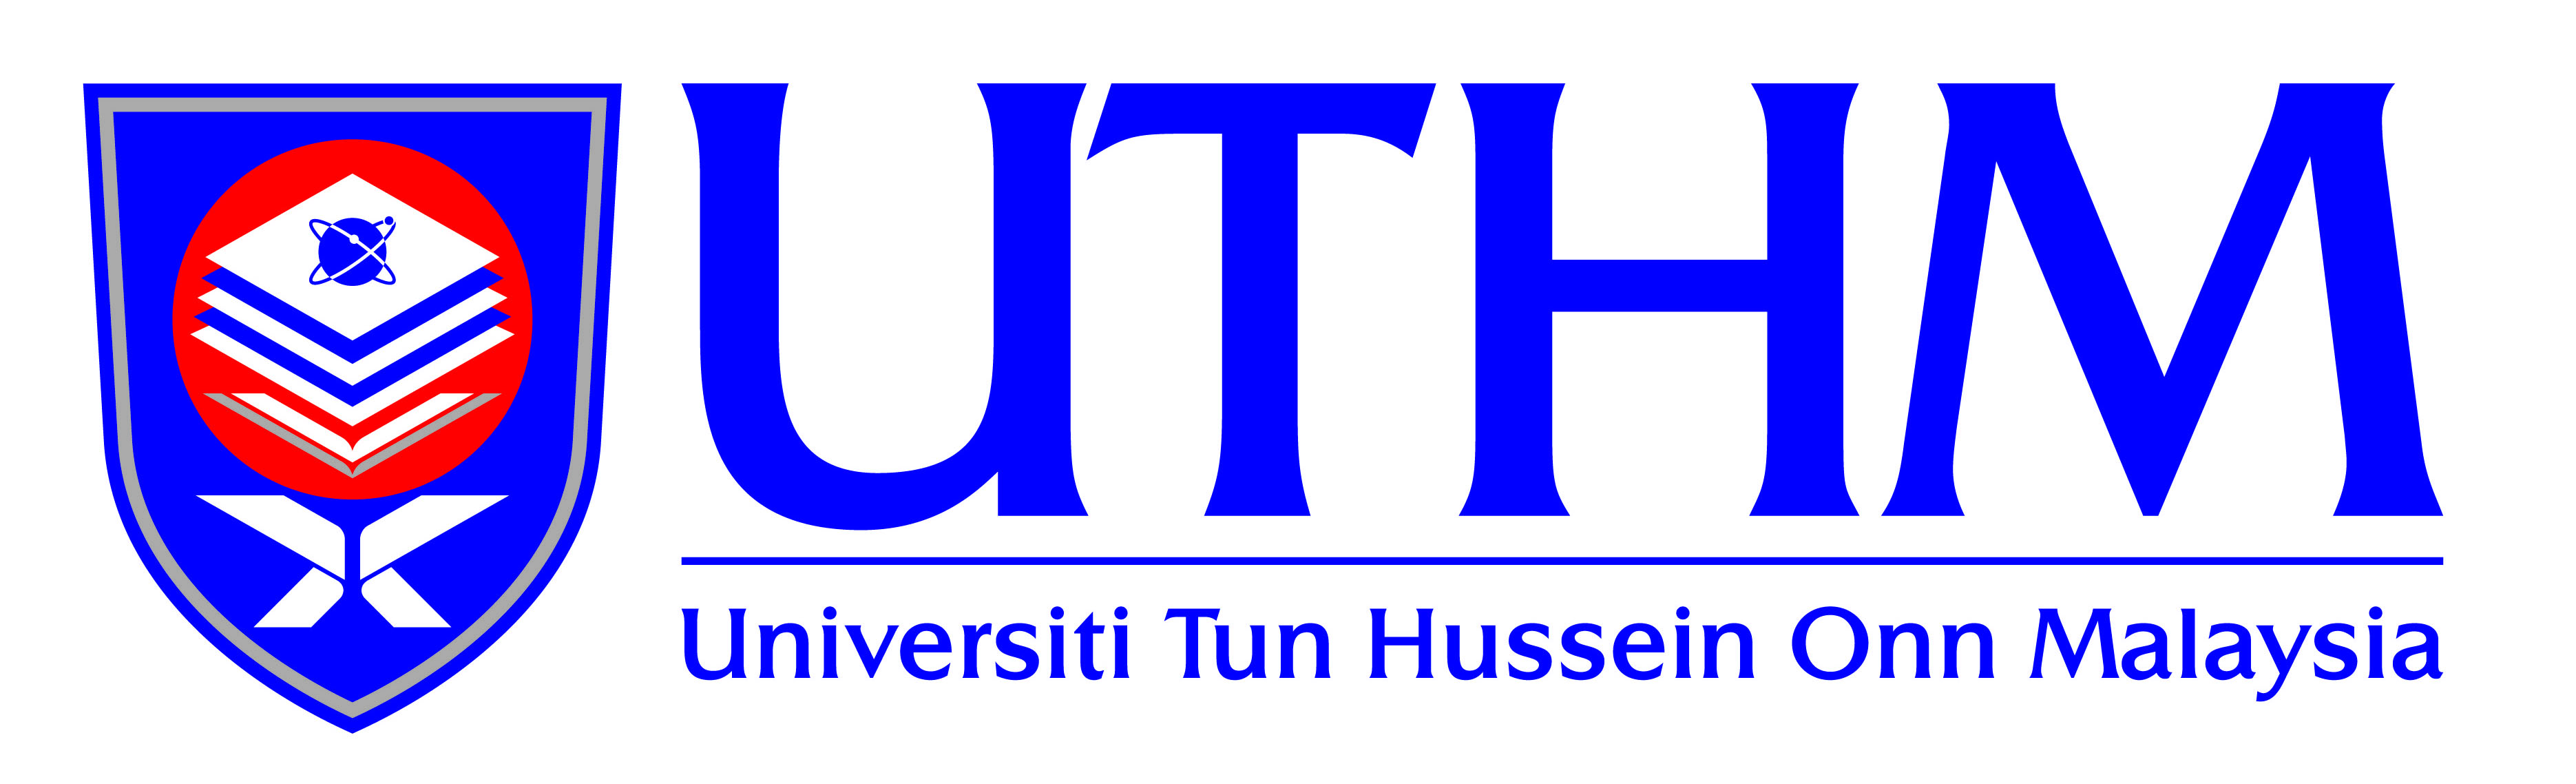 UTHM jayakan semangat MEA melalui kerjasama dengan universiti-universiti di Indonesia